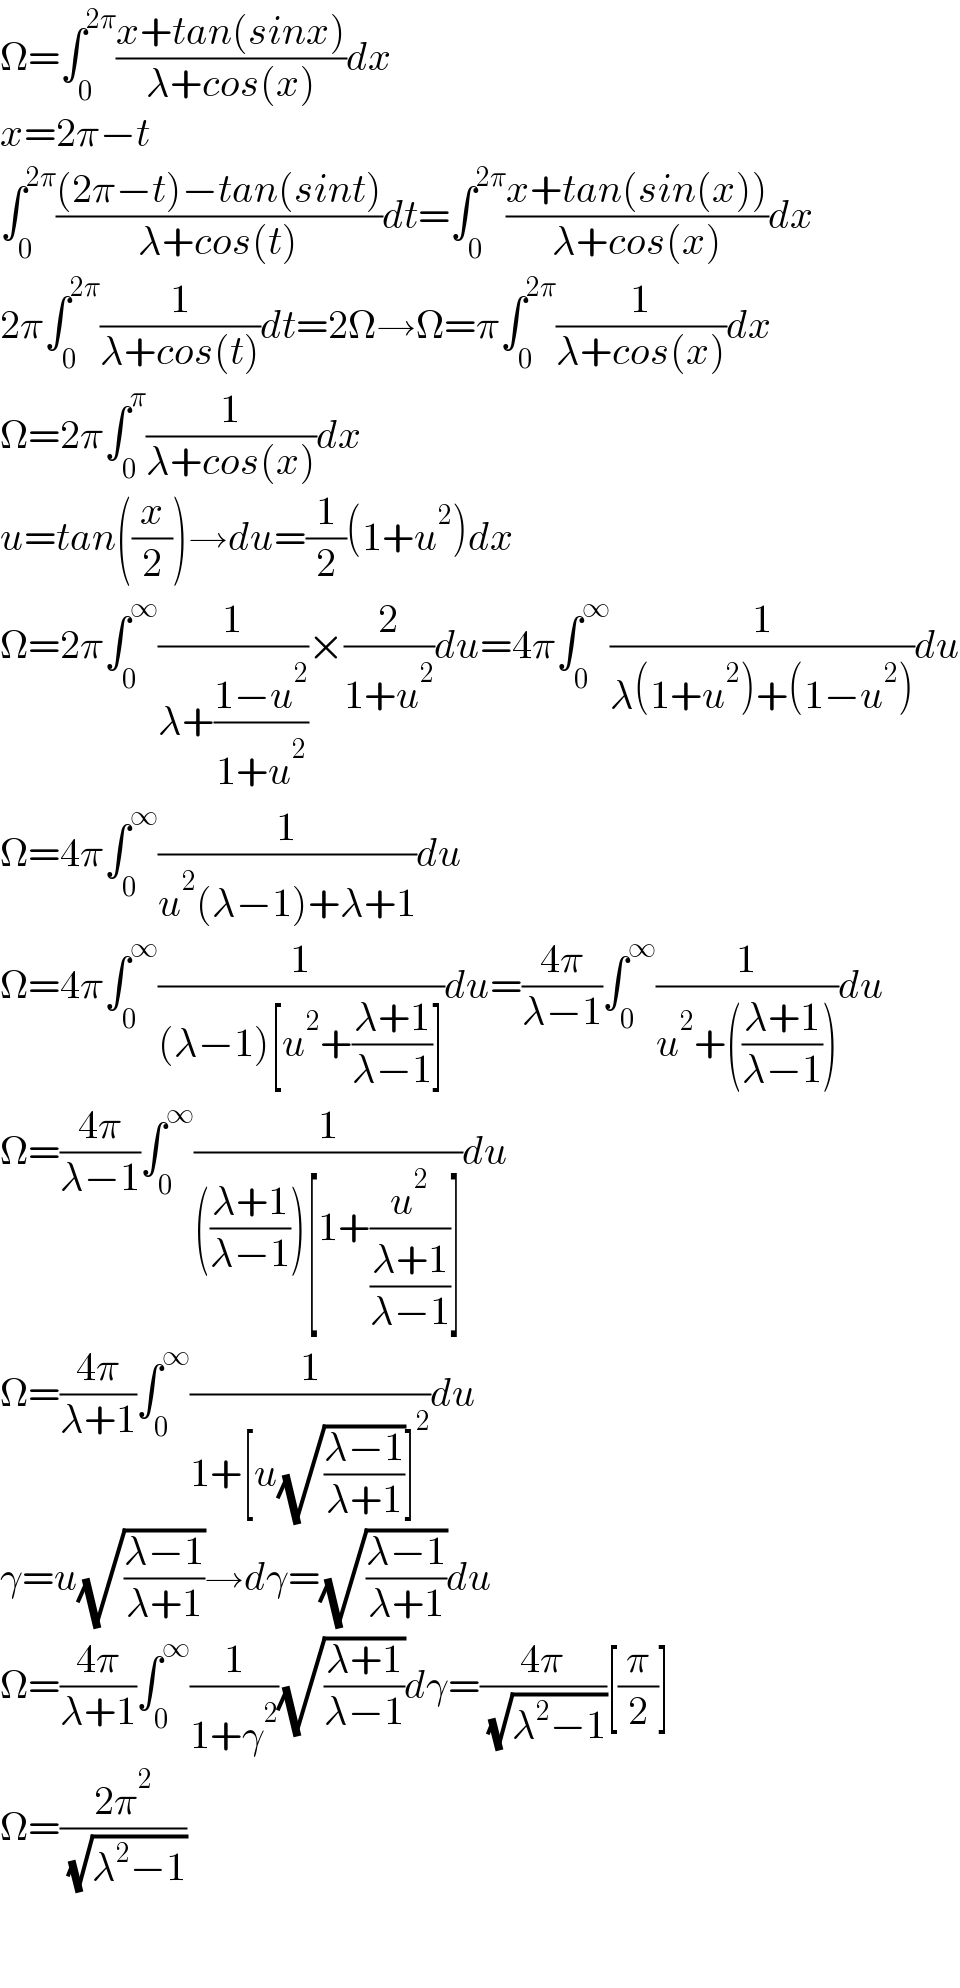 Ω=∫_0 ^(2π) ((x+tan(sinx))/(λ+cos(x)))dx  x=2π−t  ∫_0 ^(2π) (((2π−t)−tan(sint))/(λ+cos(t)))dt=∫_0 ^(2π) ((x+tan(sin(x)))/(λ+cos(x)))dx  2π∫_0 ^(2π) (1/(λ+cos(t)))dt=2Ω→Ω=π∫_0 ^(2π) (1/(λ+cos(x)))dx  Ω=2π∫_0 ^π (1/(λ+cos(x)))dx  u=tan((x/2))→du=(1/2)(1+u^2 )dx  Ω=2π∫_0 ^∞ (1/(λ+((1−u^2 )/(1+u^2 ))))×(2/(1+u^2 ))du=4π∫_0 ^∞ (1/(λ(1+u^2 )+(1−u^2 )))du  Ω=4π∫_0 ^∞ (1/(u^2 (λ−1)+λ+1))du  Ω=4π∫_0 ^∞ (1/((λ−1)[u^2 +((λ+1)/(λ−1))]))du=((4π)/(λ−1))∫_0 ^∞ (1/(u^2 +(((λ+1)/(λ−1)))))du  Ω=((4π)/(λ−1))∫_0 ^∞ (1/((((λ+1)/(λ−1)))[1+(u^2 /((λ+1)/(λ−1)))]))du  Ω=((4π)/(λ+1))∫_0 ^∞ (1/(1+[u(√((λ−1)/(λ+1)))]^2 ))du  γ=u(√((λ−1)/(λ+1)))→dγ=(√((λ−1)/(λ+1)))du  Ω=((4π)/(λ+1))∫_0 ^∞ (1/(1+γ^2 ))(√((λ+1)/(λ−1)))dγ=((4π)/( (√(λ^2 −1))))[(π/2)]  Ω=((2π^2 )/( (√(λ^2 −1))))      